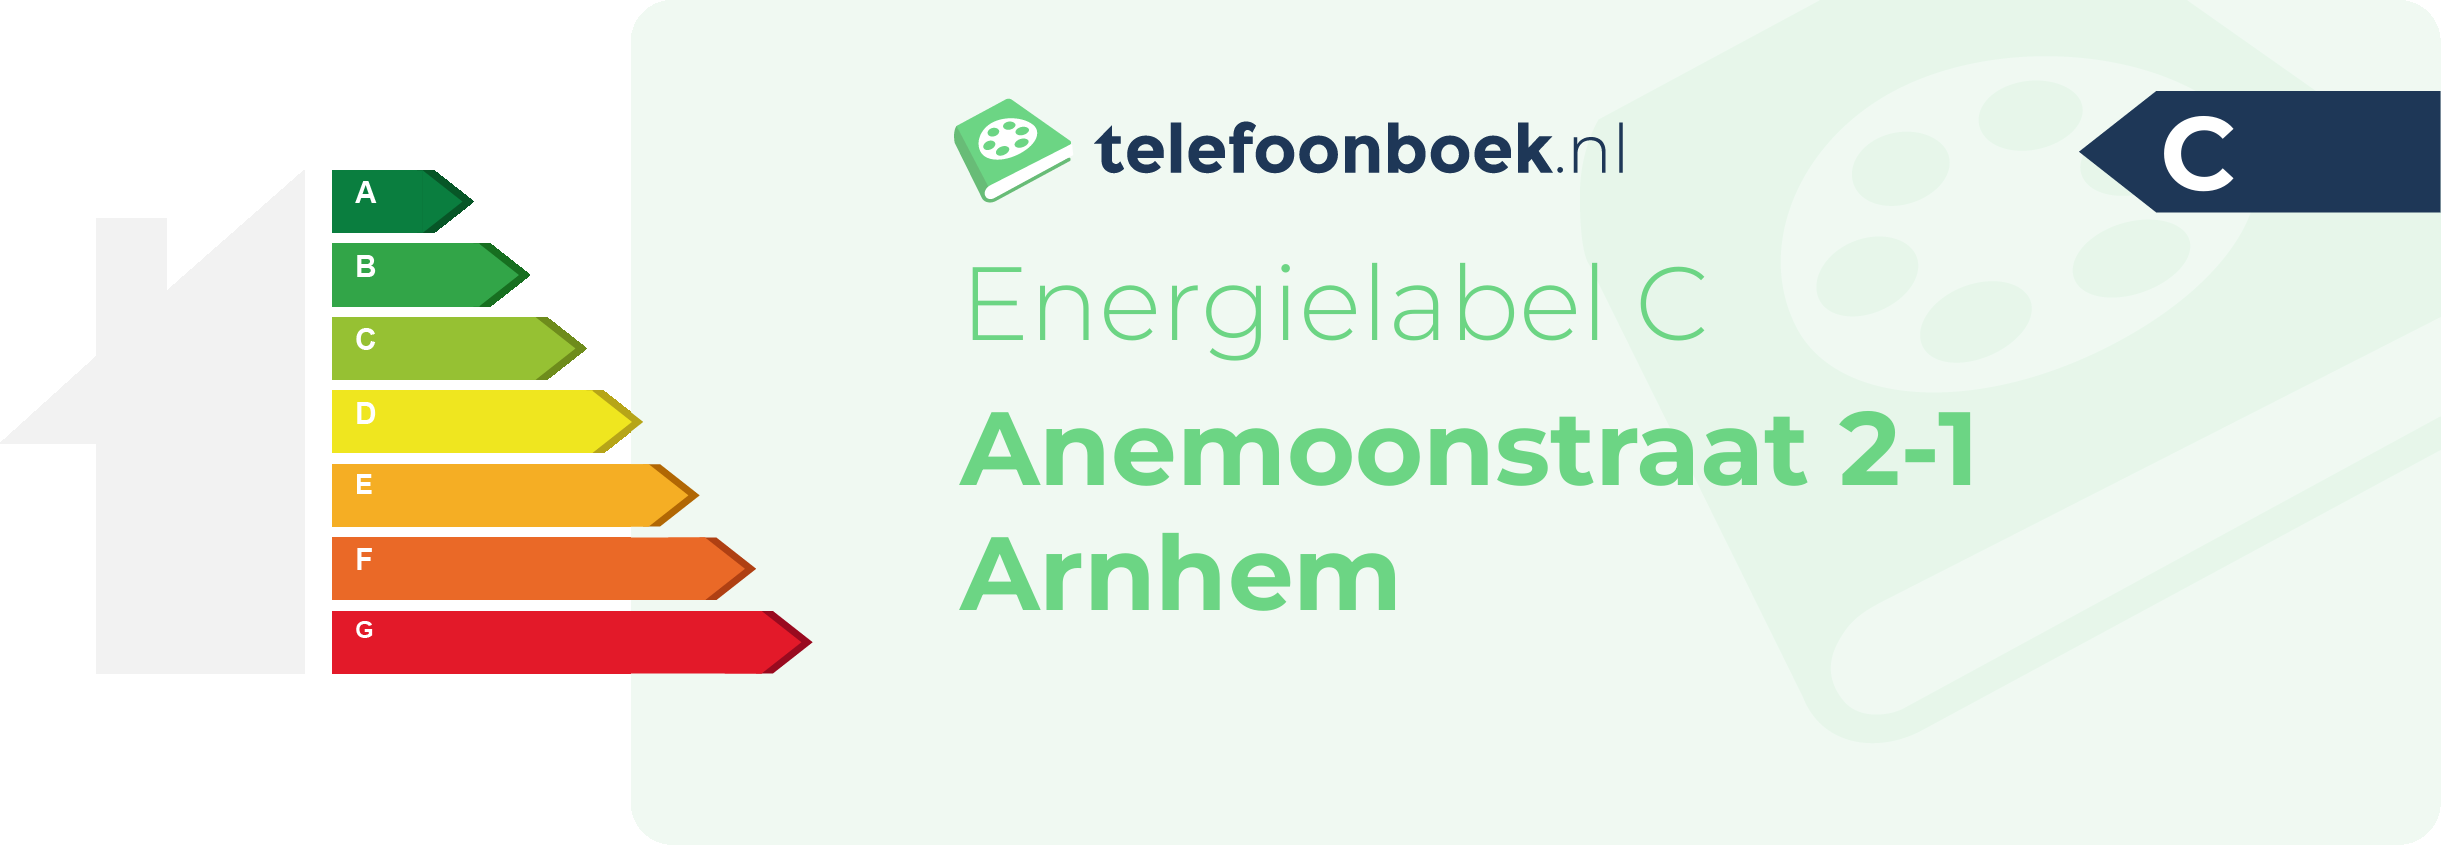 Energielabel Anemoonstraat 2-1 Arnhem